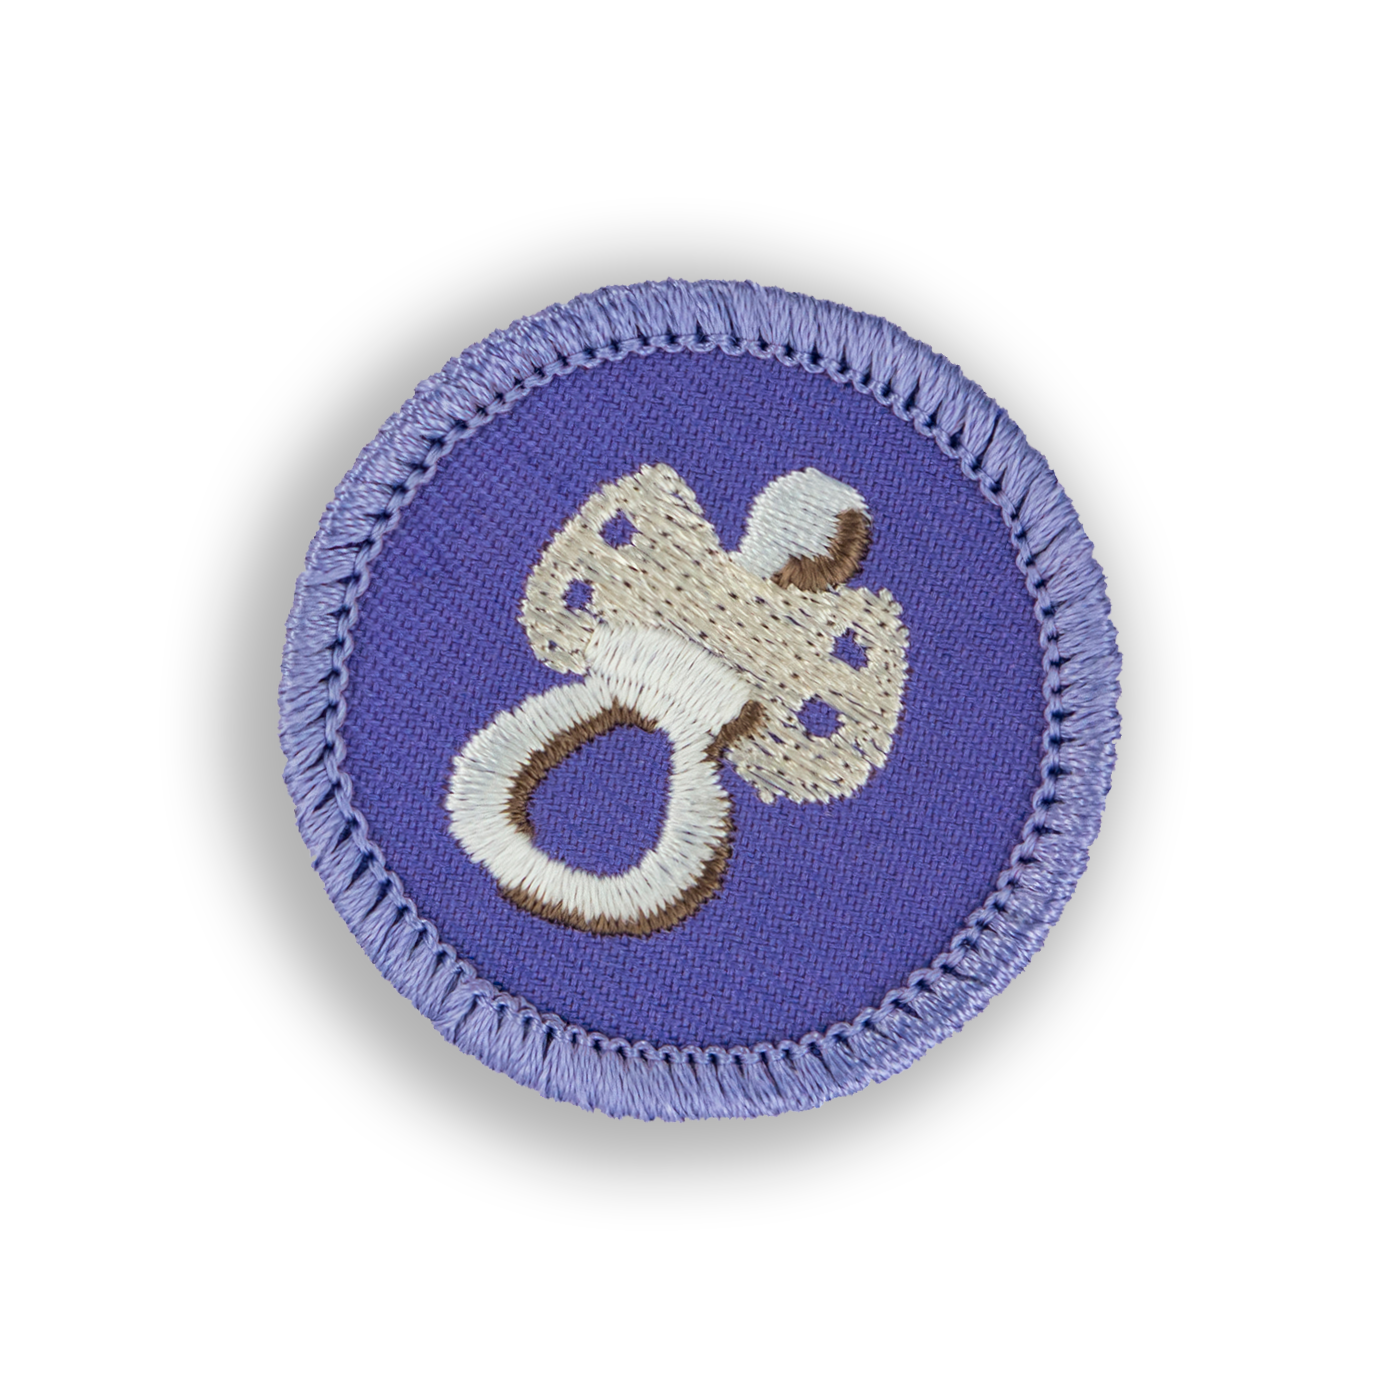 Binky Patch - Demerit Wear - Fake Merit Badges